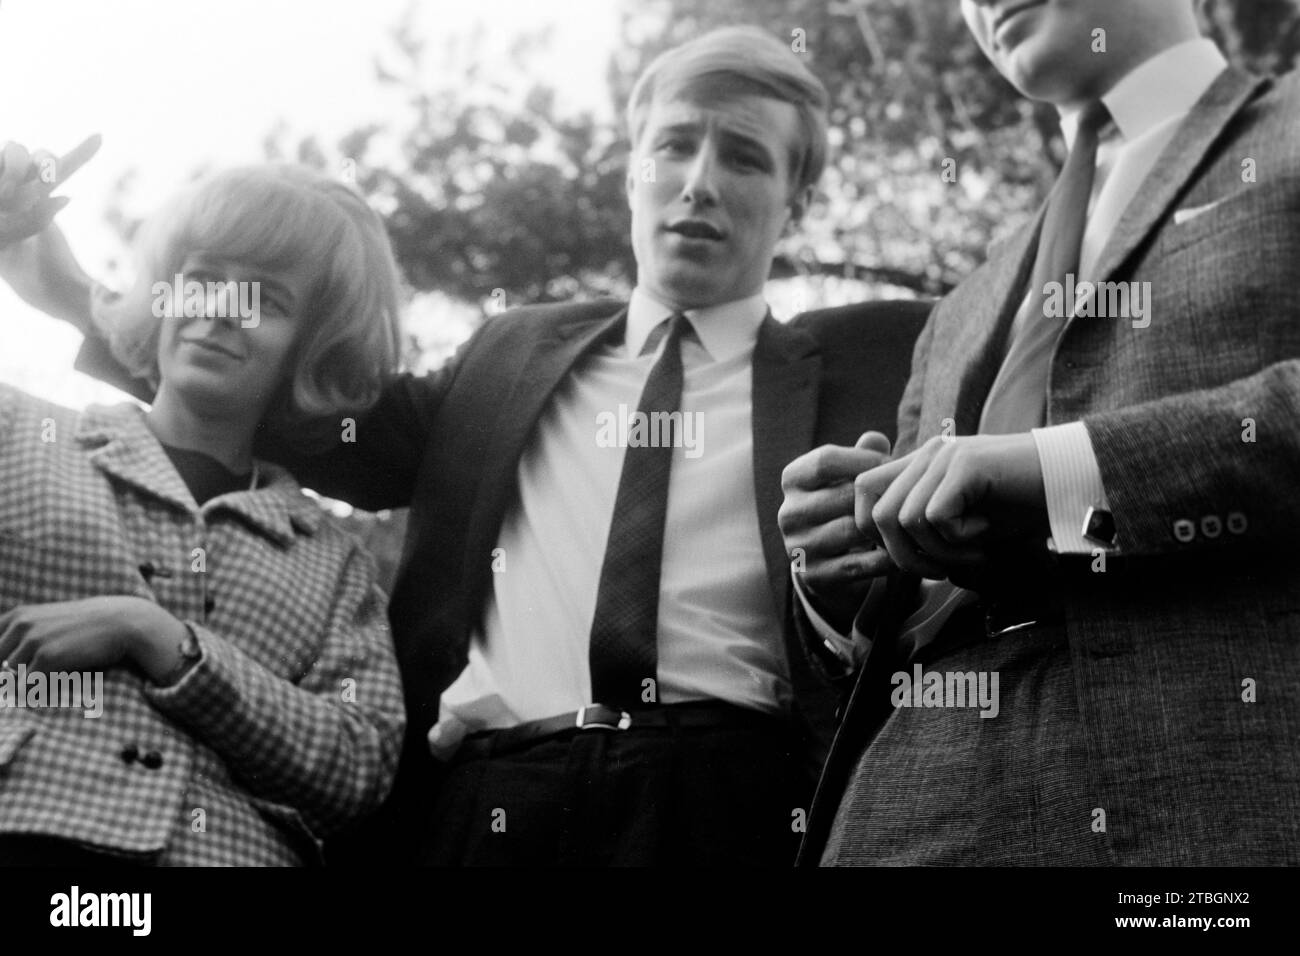 Junge Leute haben Spaß vor der Kamera, Frankreich 1965. Des jeunes qui s'amusent devant la caméra, France 1965. Banque D'Images